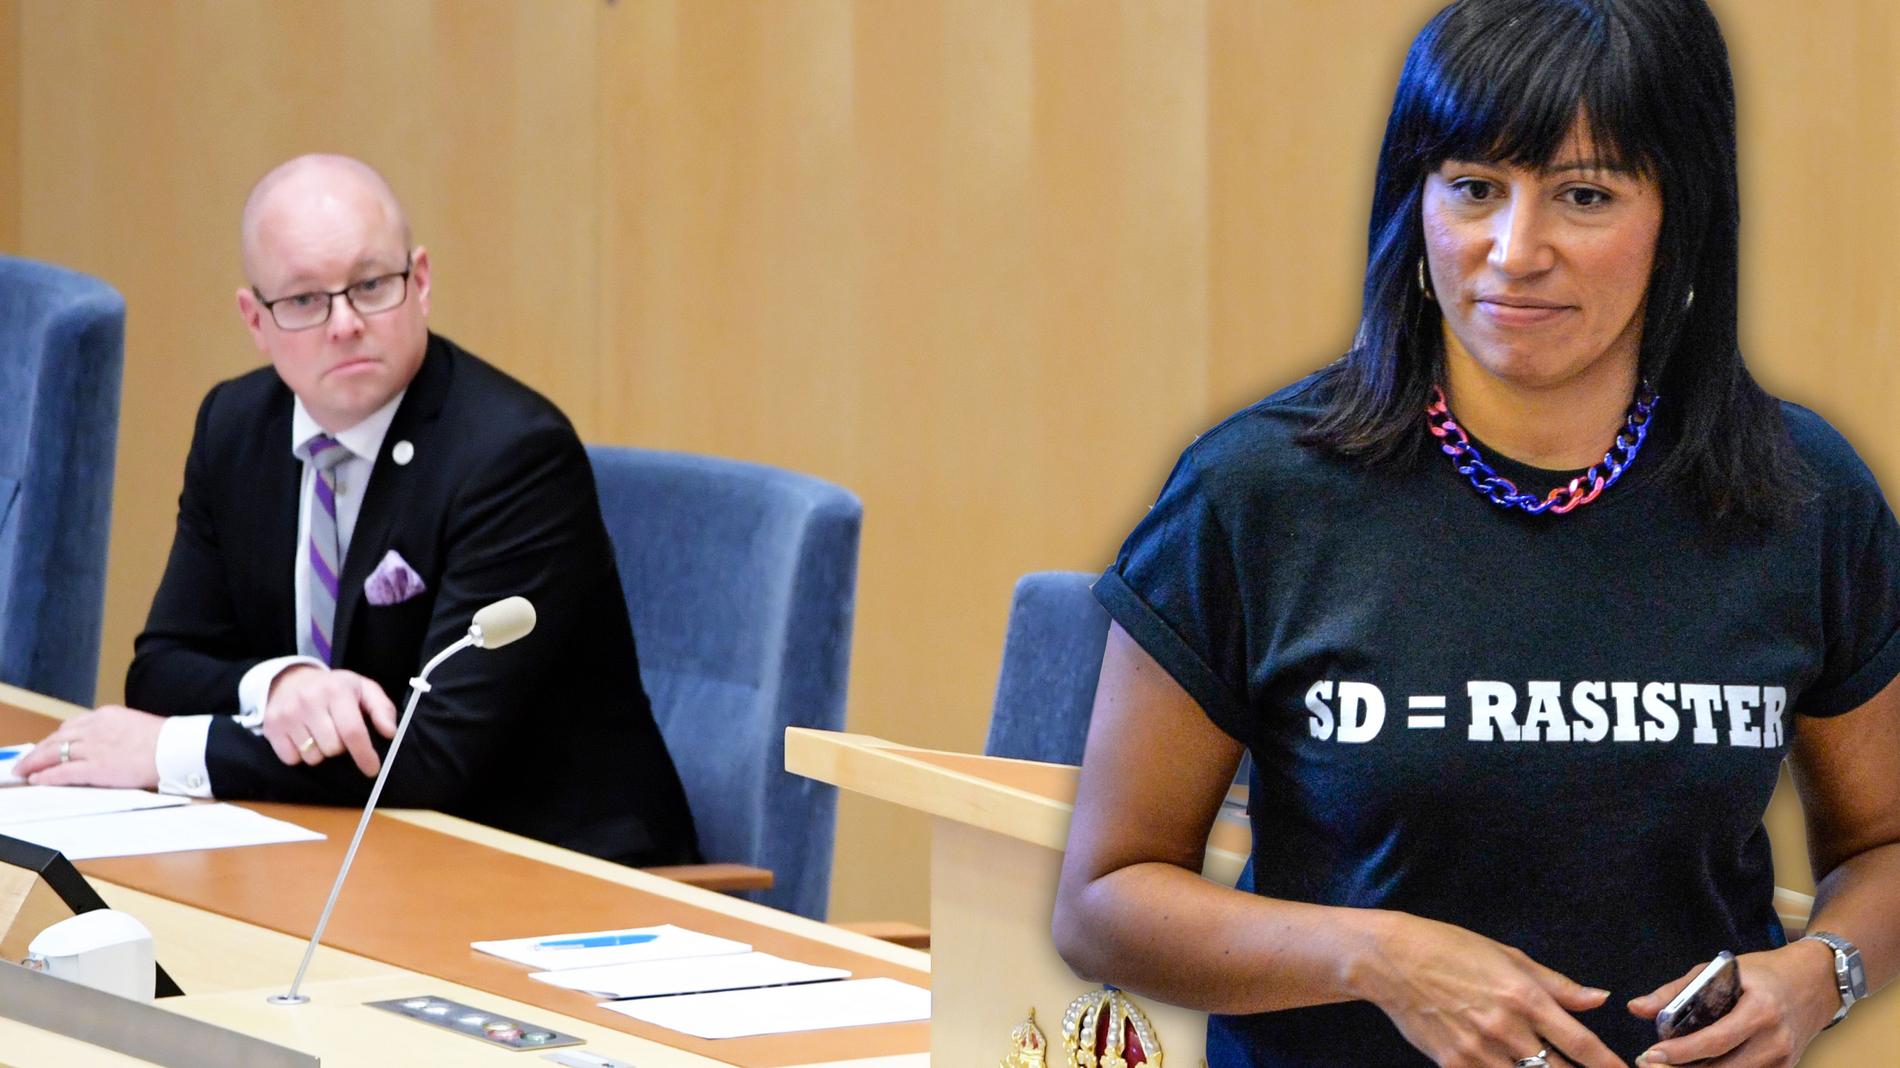 Att välja en sverigedemokrat till någon talmanspost är att ge legitimitet åt deras åsikter, skriver Rossana Dinamarca som bar t-shirt med texten SD=rasister i protest i samband med talmansvalet efter valet 2014.